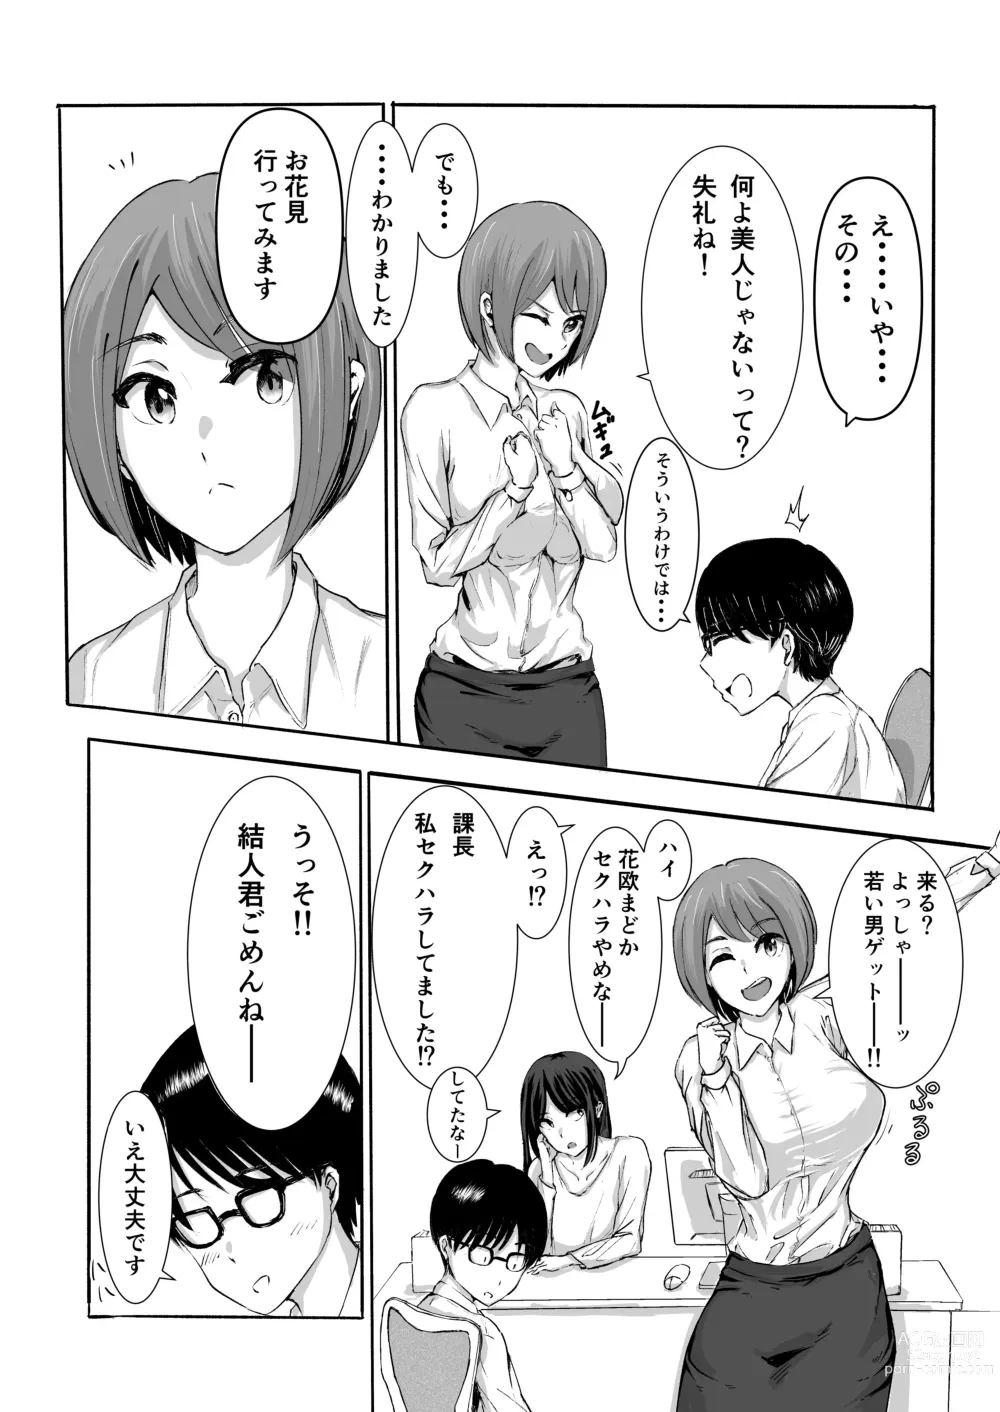 Page 9 of doujinshi Sakura no Hana Chiru Koro